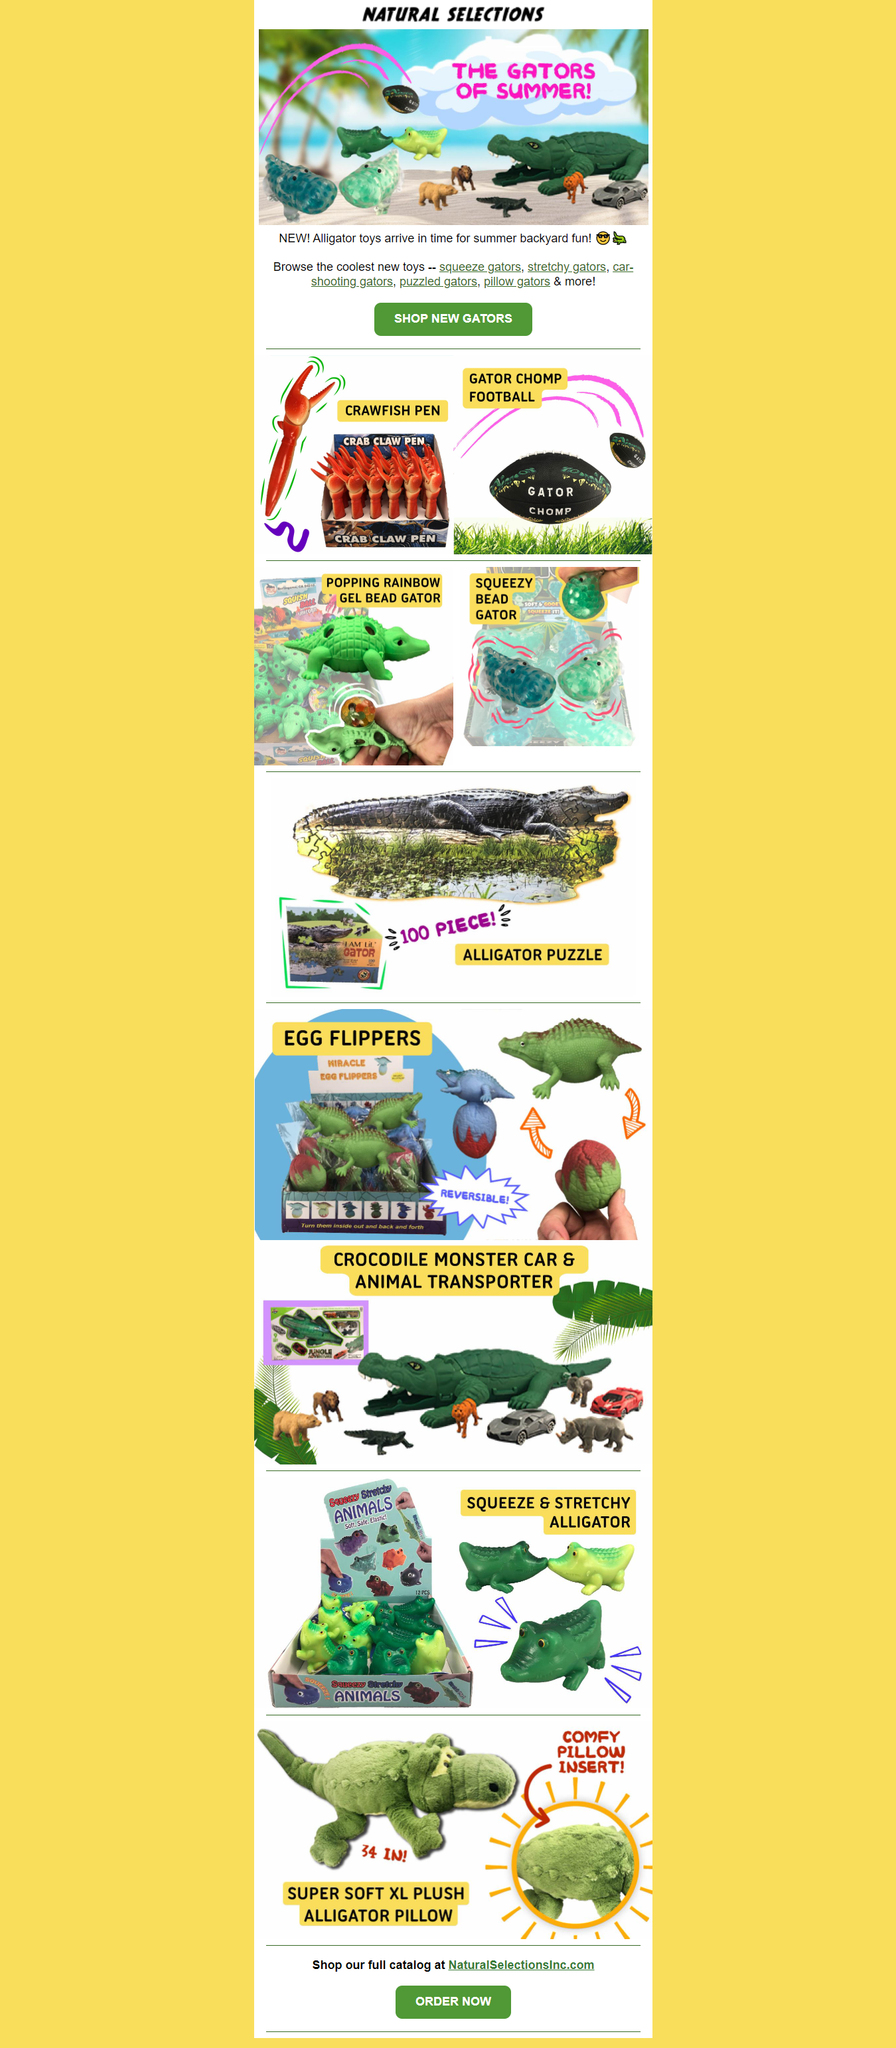 New alligator toys for summer